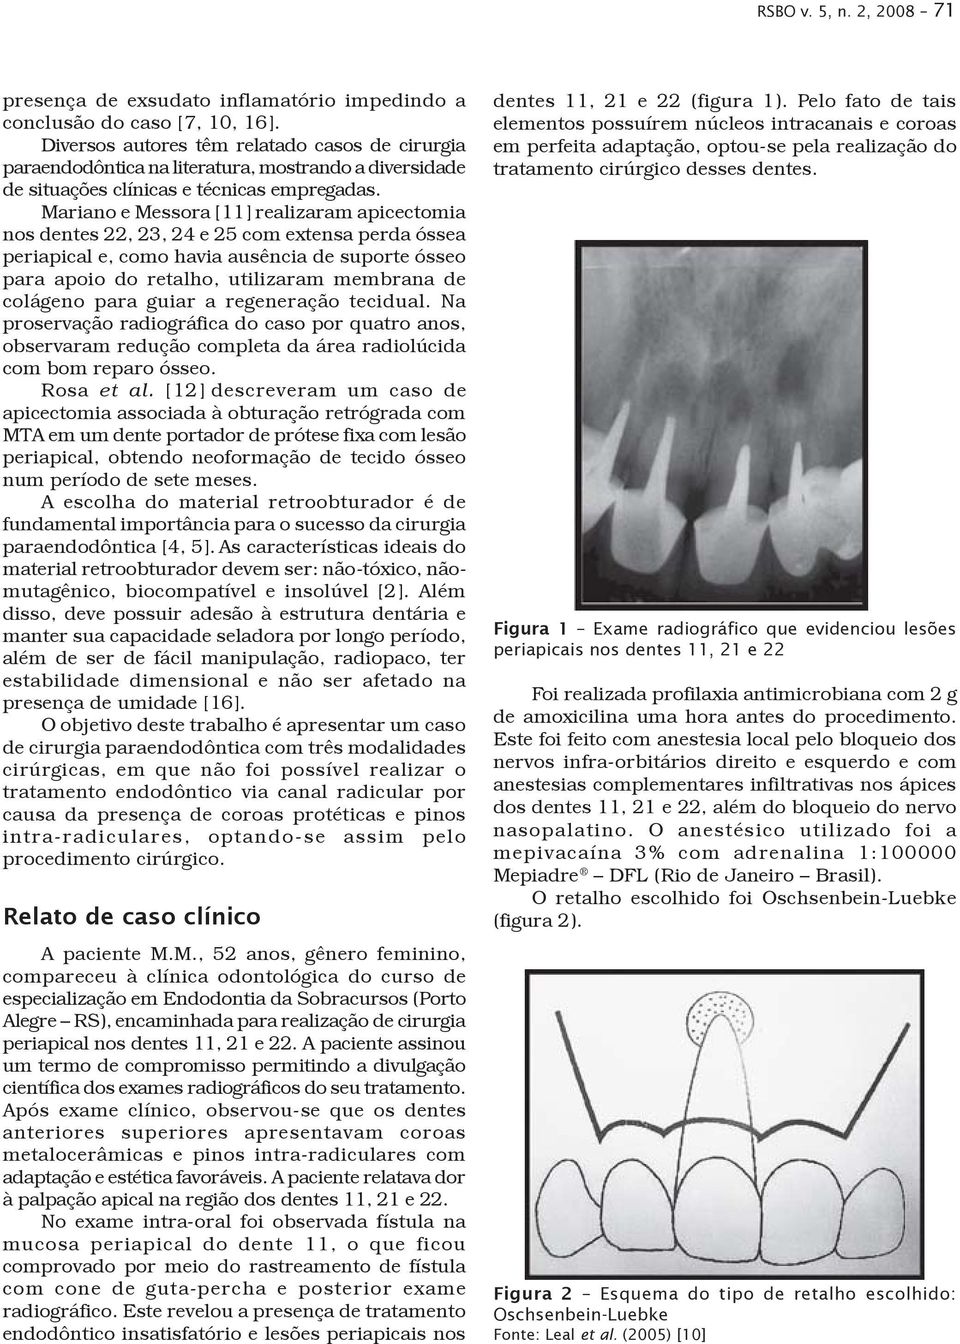 Mariano e Messora [11] realizaram apicectomia nos dentes 22, 23, 24 e 25 com extensa perda óssea periapical e, como havia ausência de suporte ósseo para apoio do retalho, utilizaram membrana de